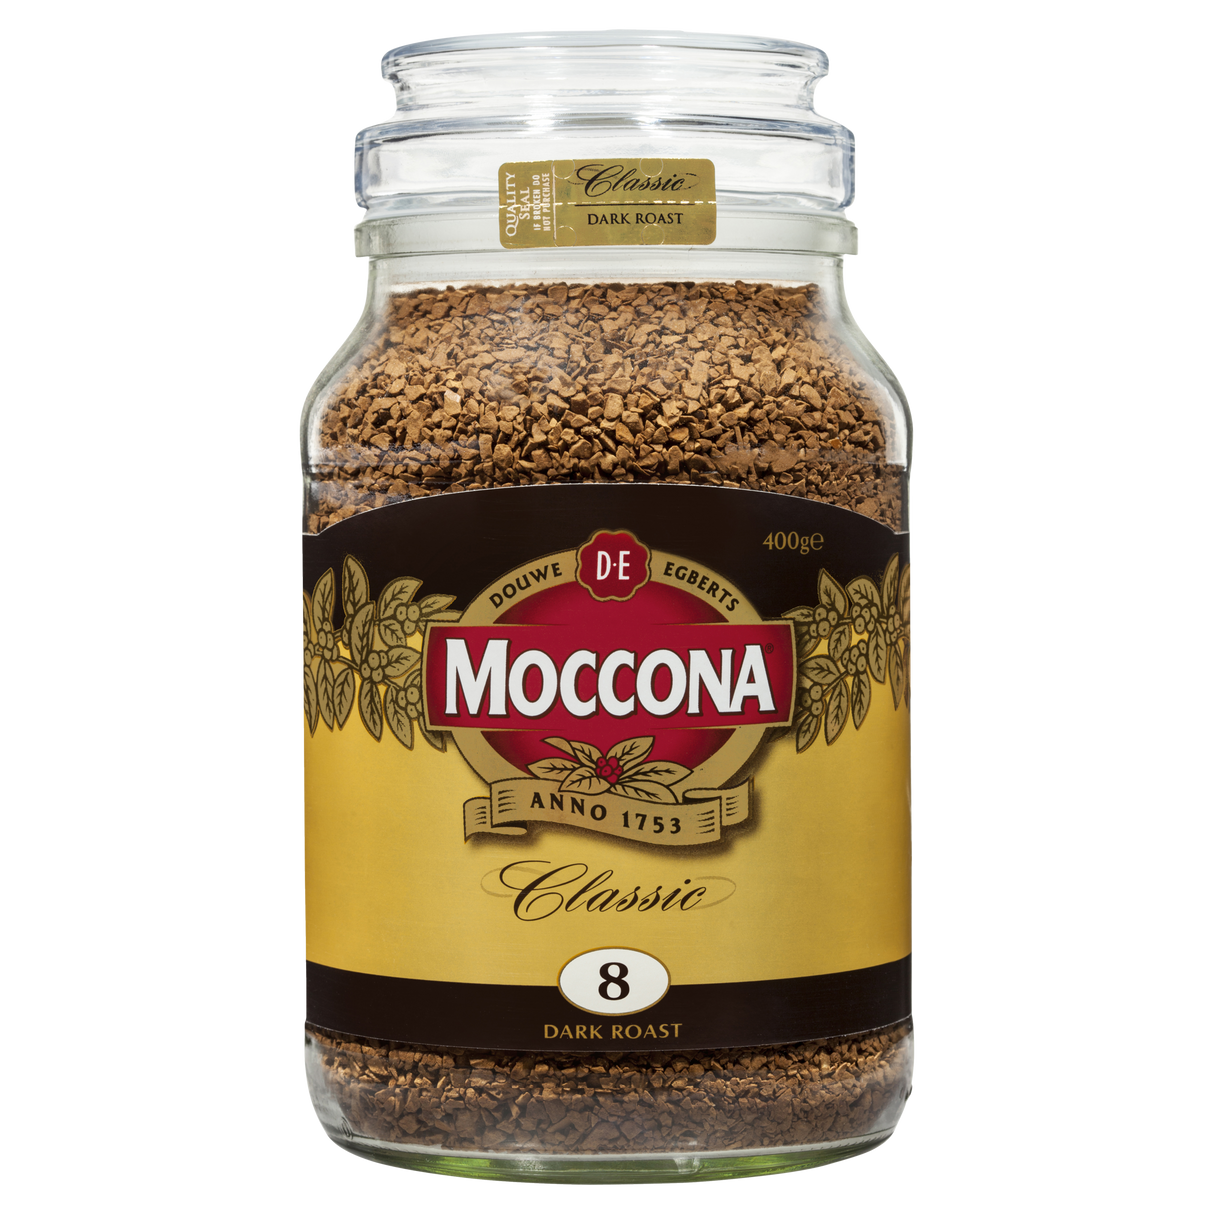 Moccona Freeze Dried Instant Coffee Classic Dark Roast 400g